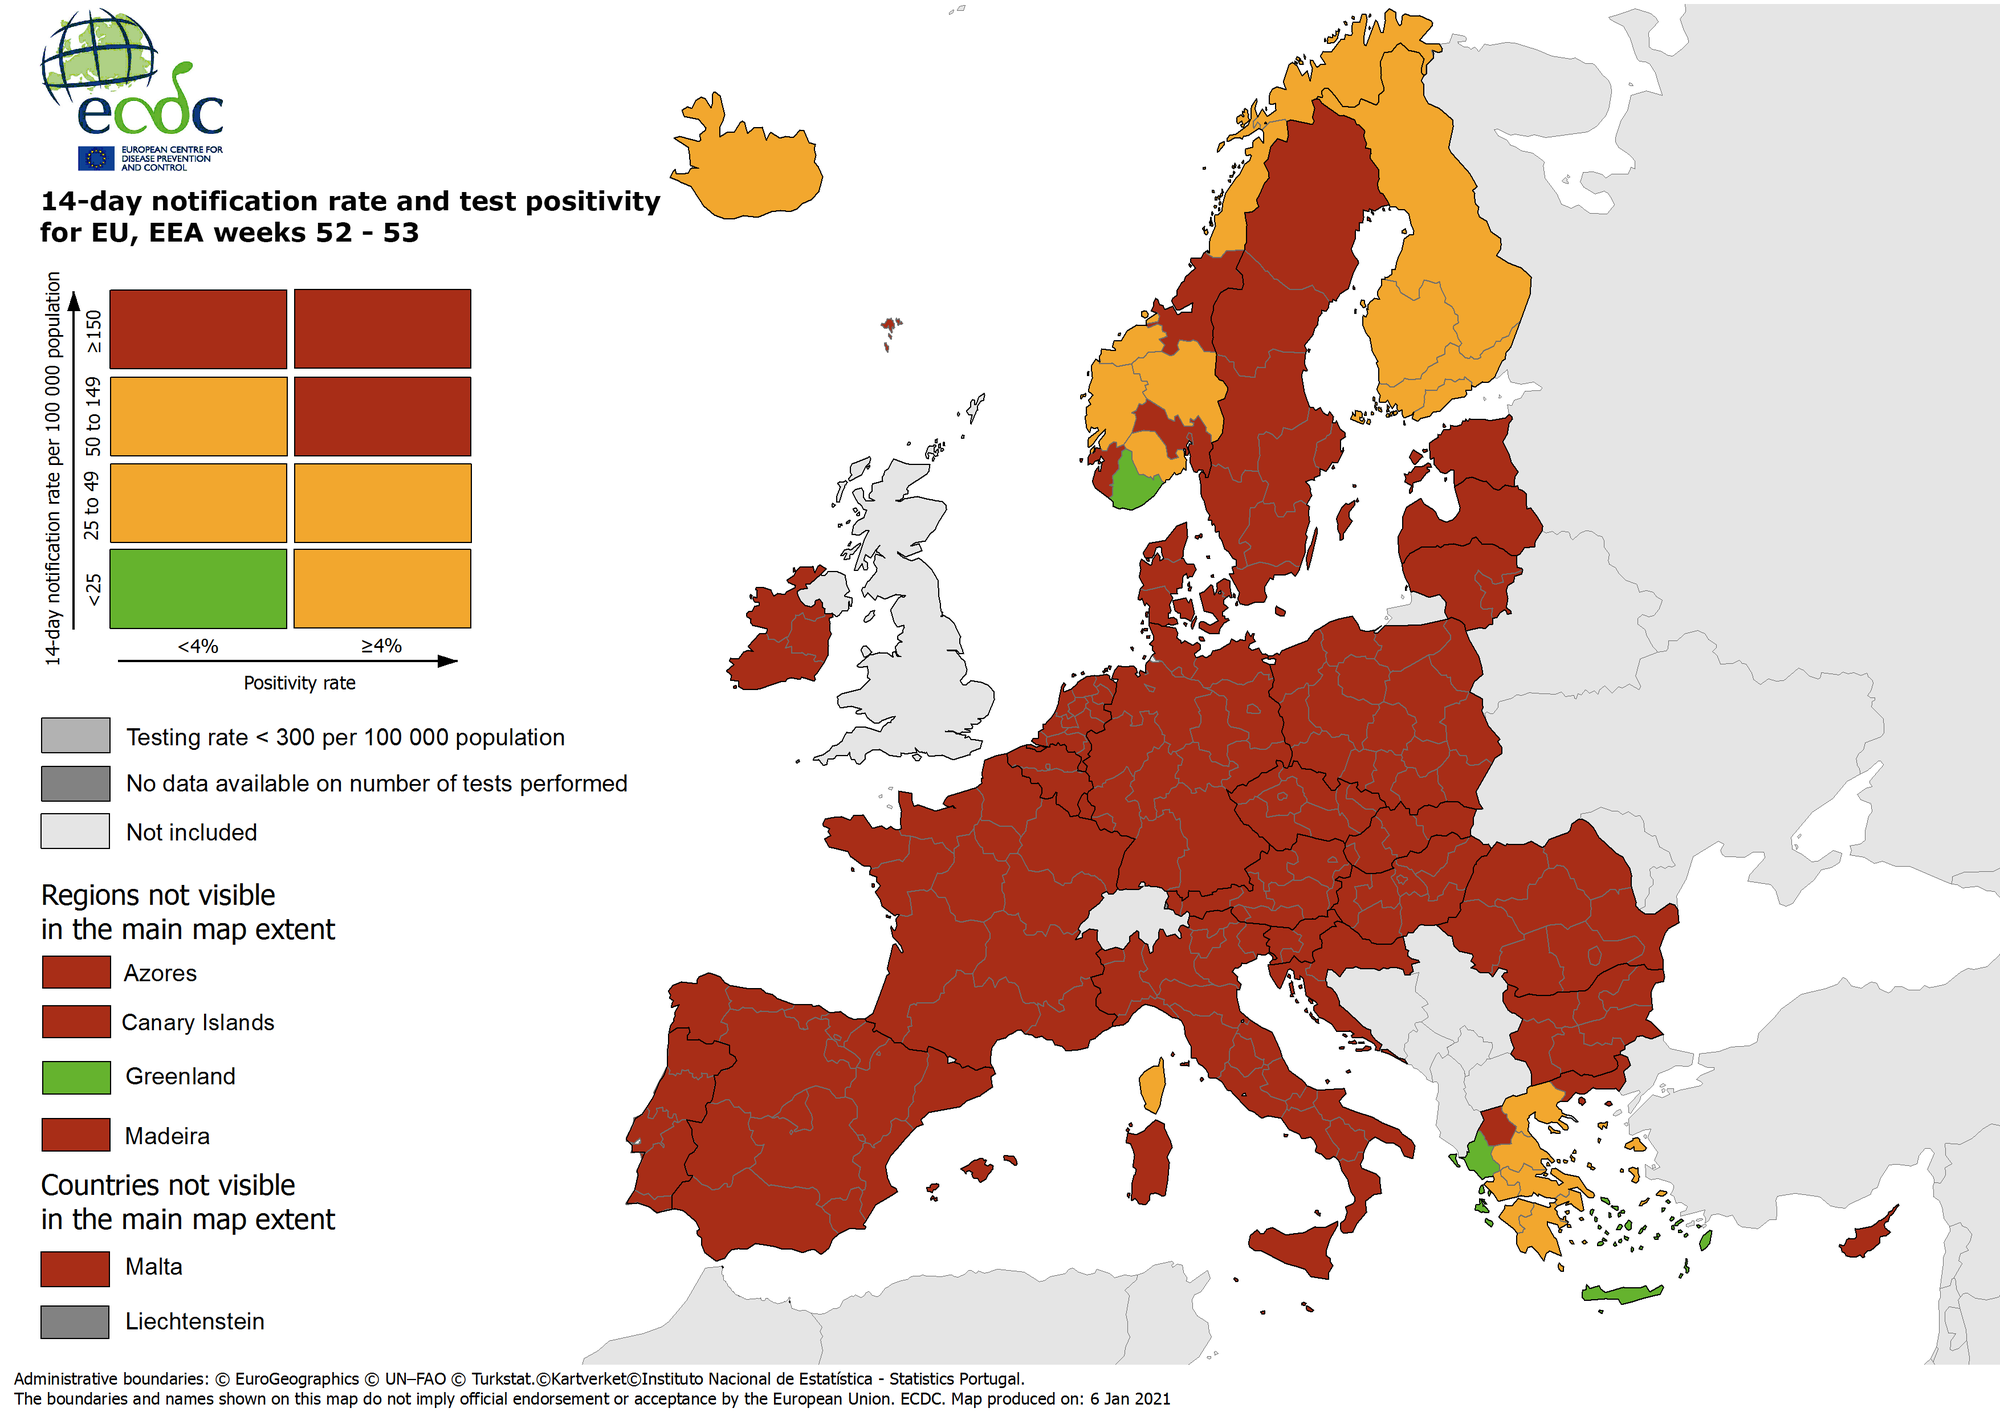 Βελτιωμένη εμφανίζεται η εικόνα της Ελλάδας στον ανανεωμένο χάρτη του Ευρωπαϊκού Κέντρου Πρόληψης και Ελέγχου Ασθενειών (ECDC) που καταγράφει την επιδημιολογική εικόνα του κορωνοϊού.